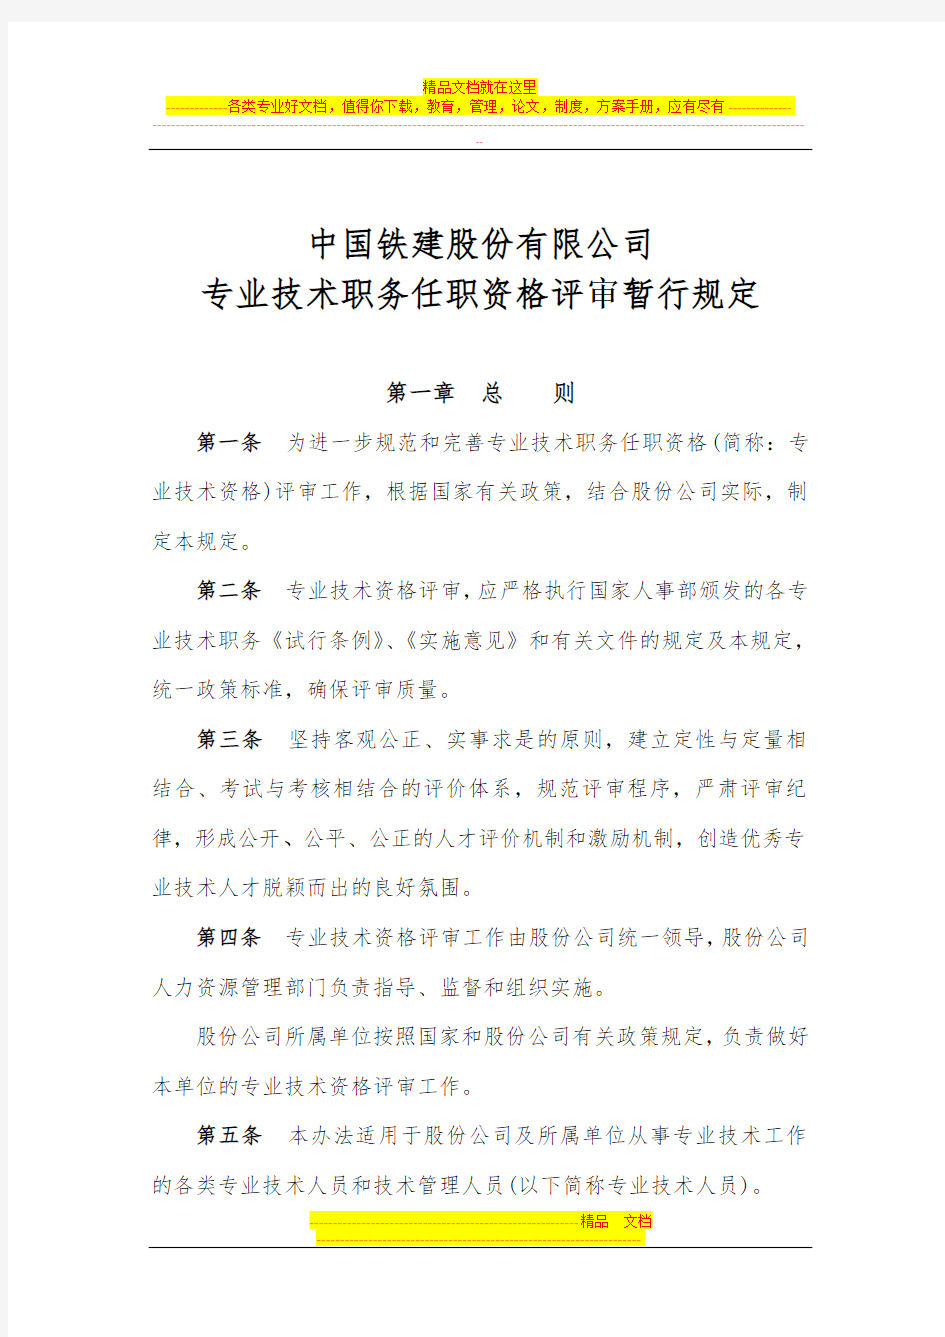 中国铁建股份有限公司专业技术职务任职资格评审暂行规定